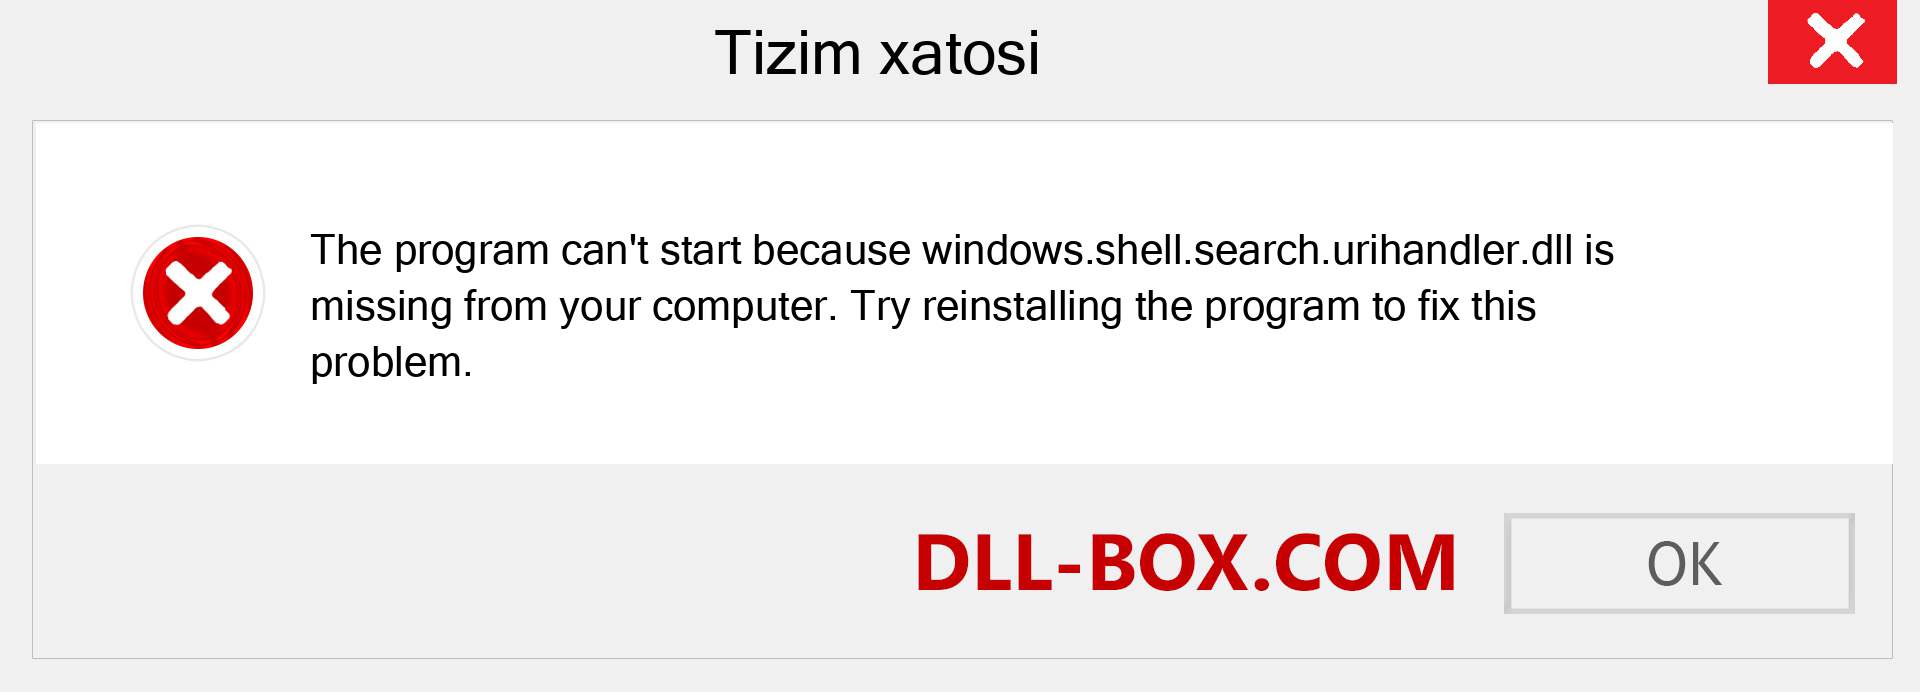 windows.shell.search.urihandler.dll fayli yo'qolganmi?. Windows 7, 8, 10 uchun yuklab olish - Windowsda windows.shell.search.urihandler dll etishmayotgan xatoni tuzating, rasmlar, rasmlar